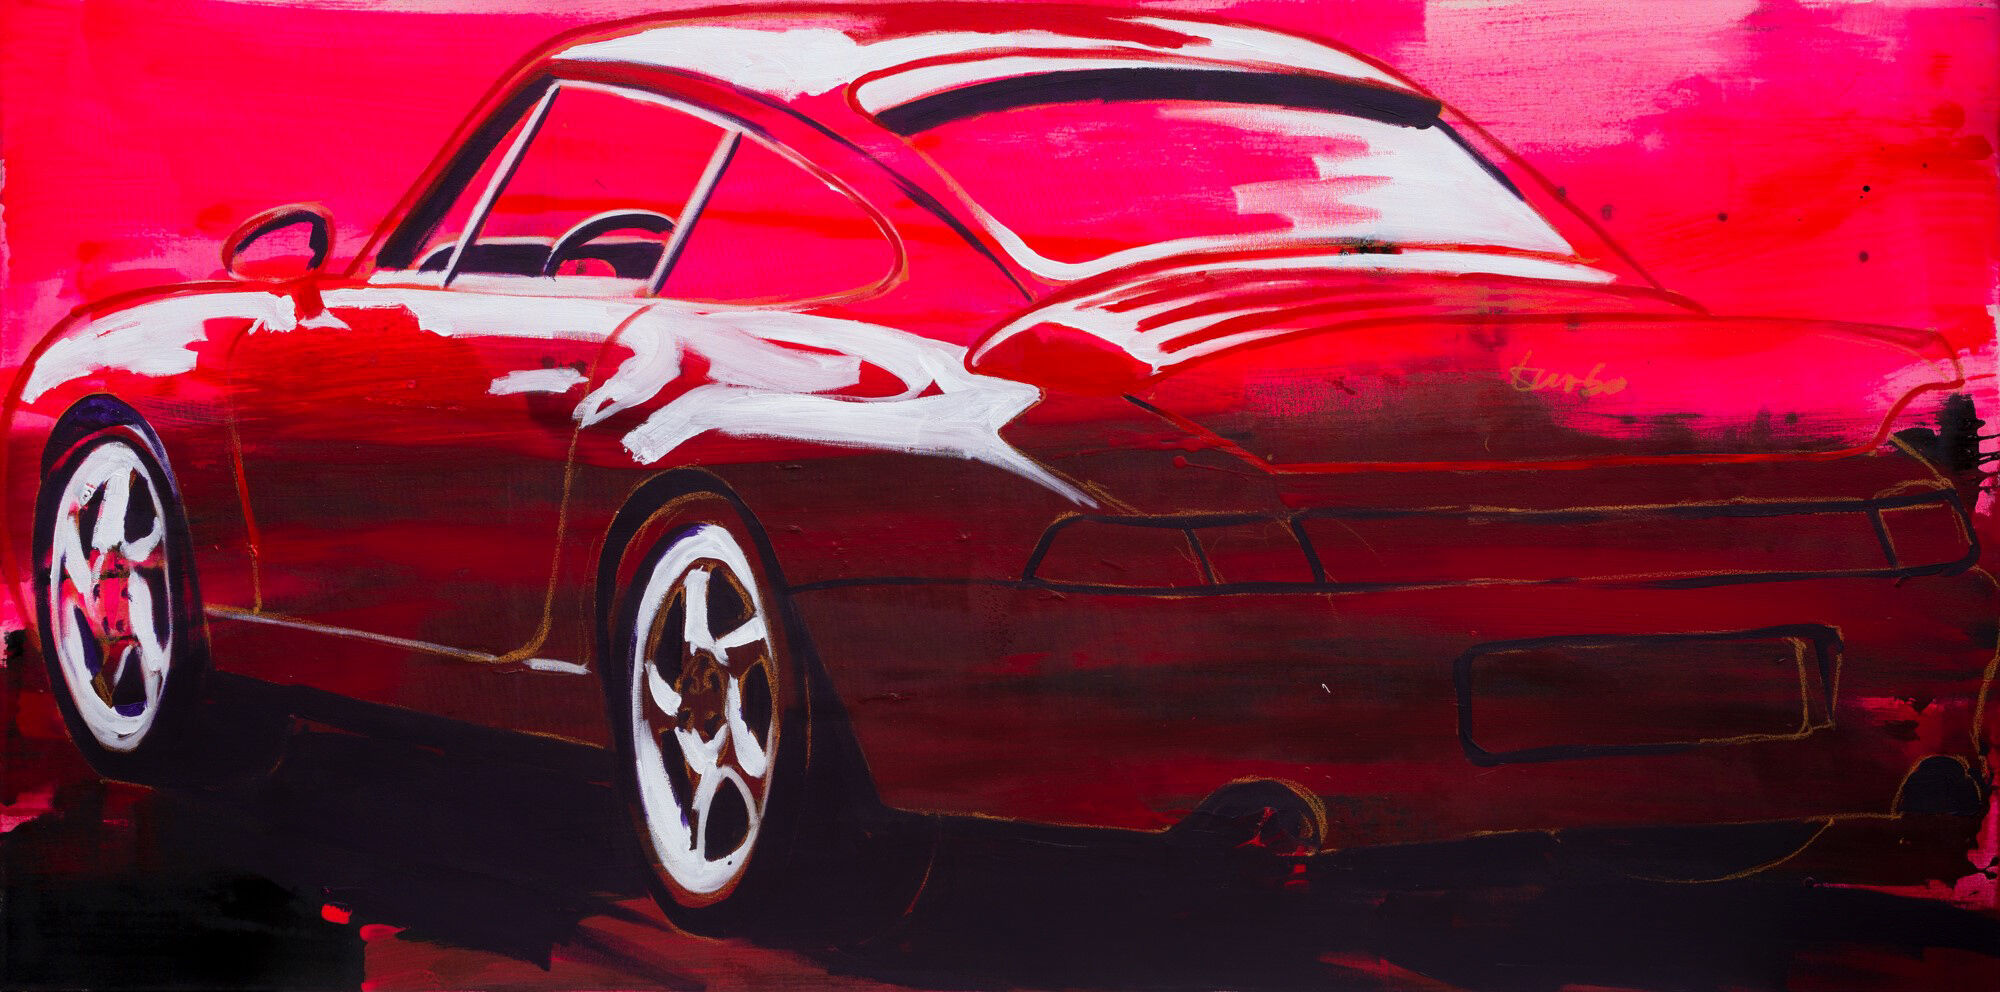 Picture "Porsche 911 Turbo" (2020) (Unique piece) by Stephan Geisler